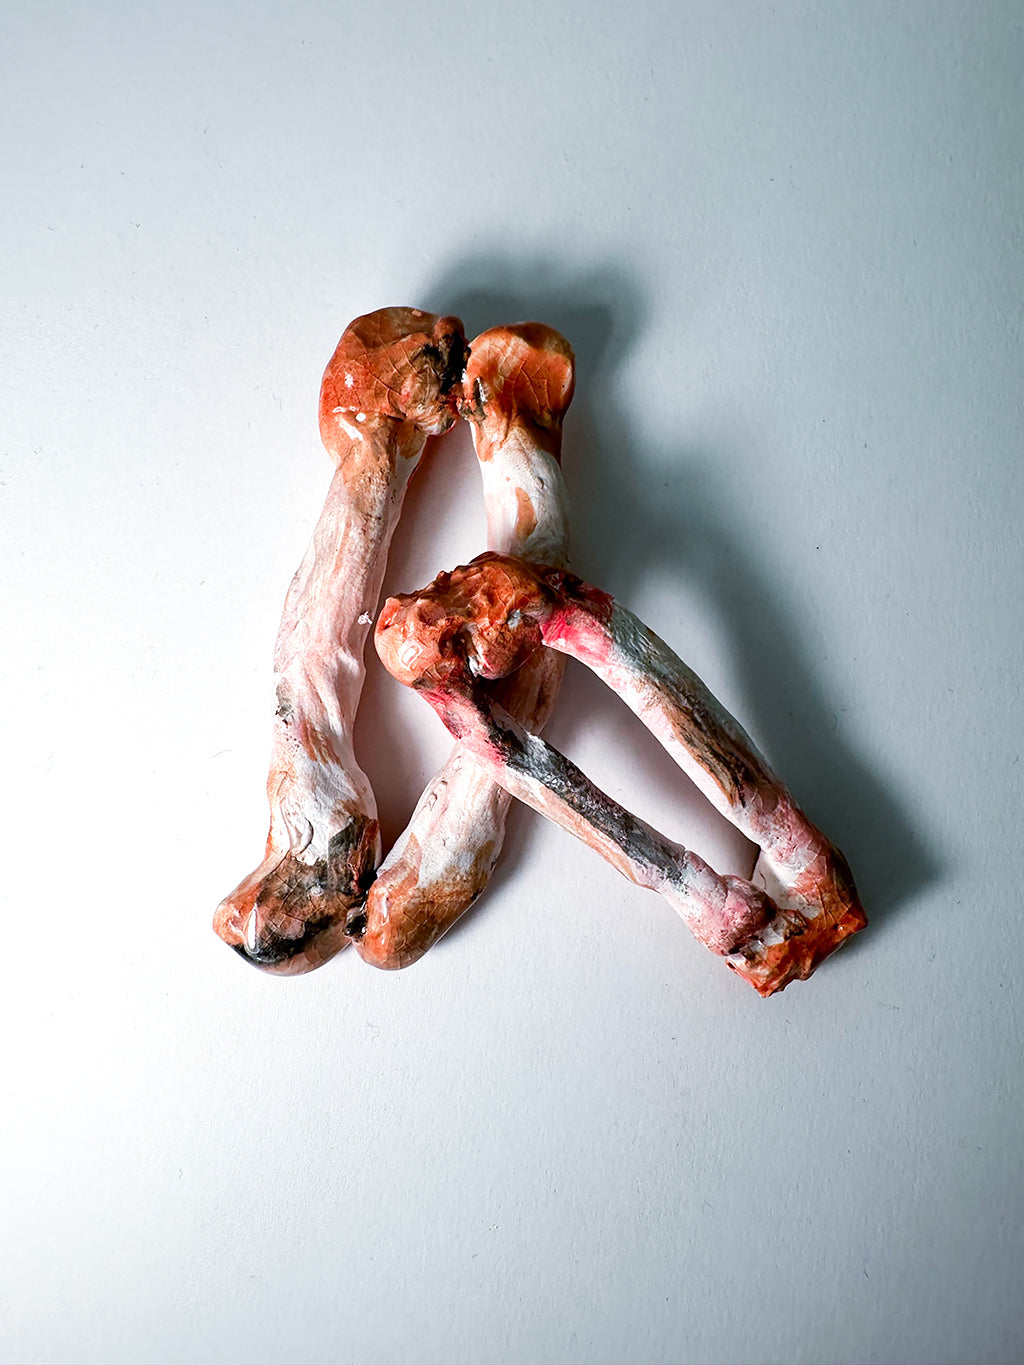 Ceramic sculpture of chicken bones